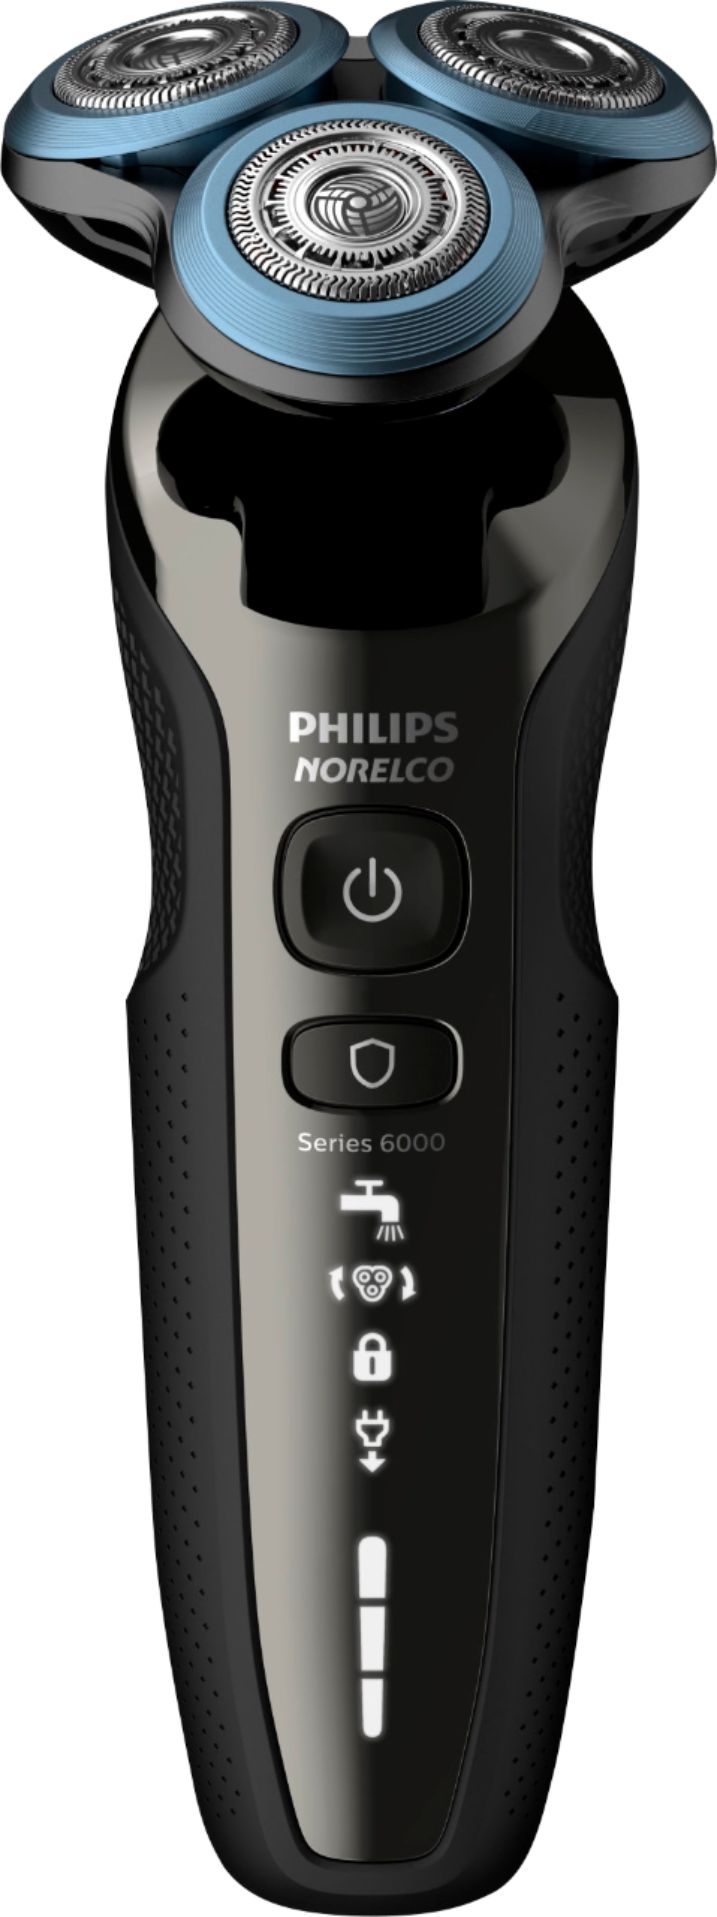 Best Buy: Philips Norelco Series 6000 SmartClick Wet/Dry Electric